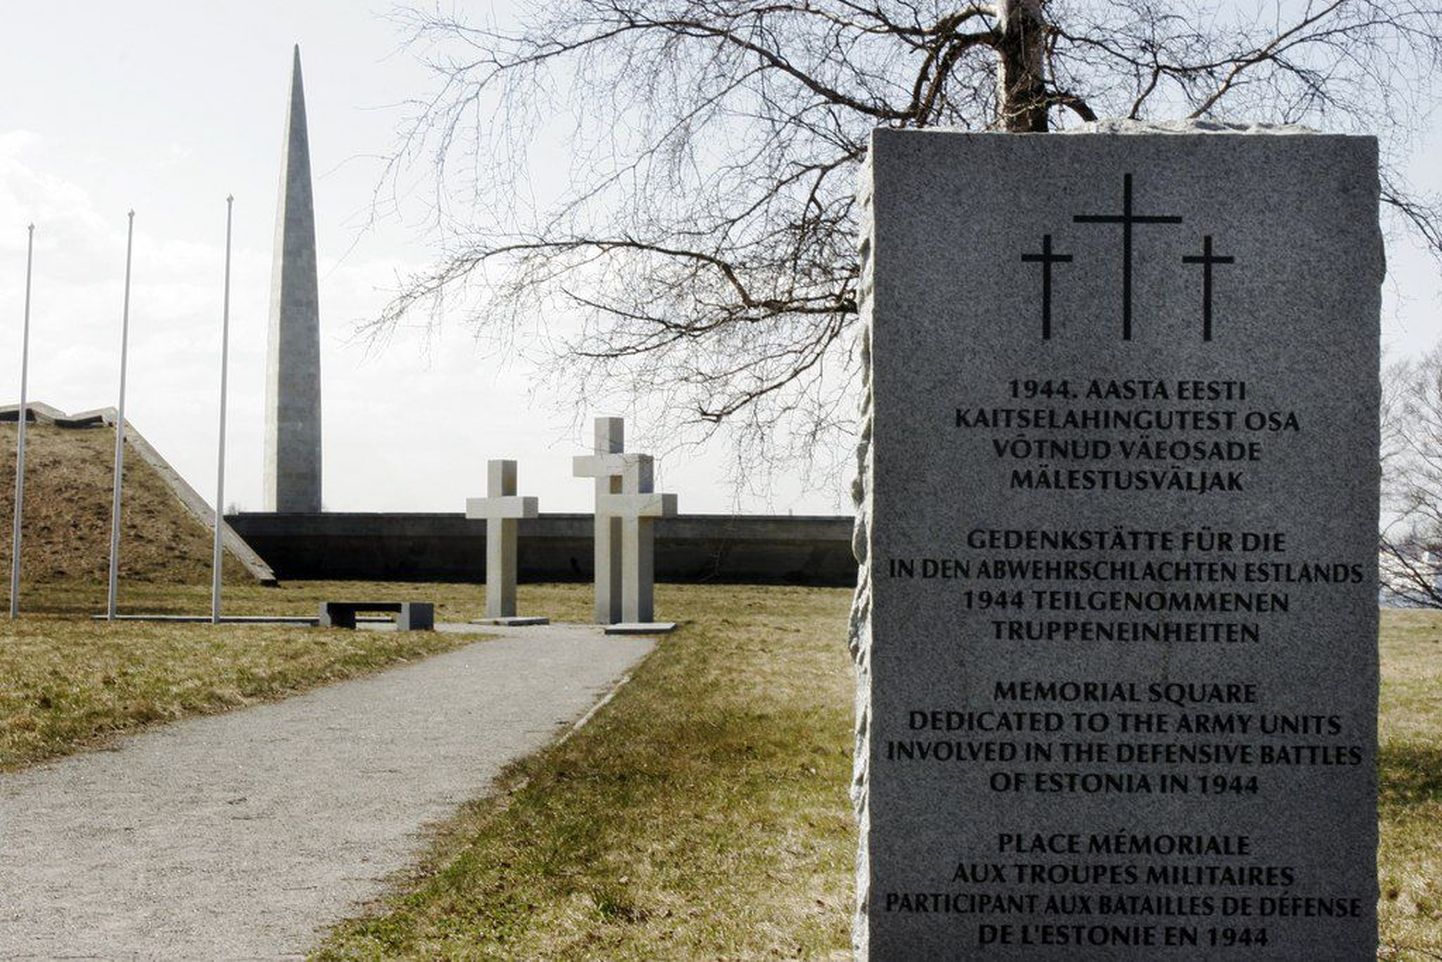 Praegu on Maarjamäel punaarmee sõduritele pühendatud memoriaal ja 1944. aastal hukkunud Saksa armee sõdurite mälestusväljak. Maarjamäele kerkib ka kommunismiohvrite memoriaal.